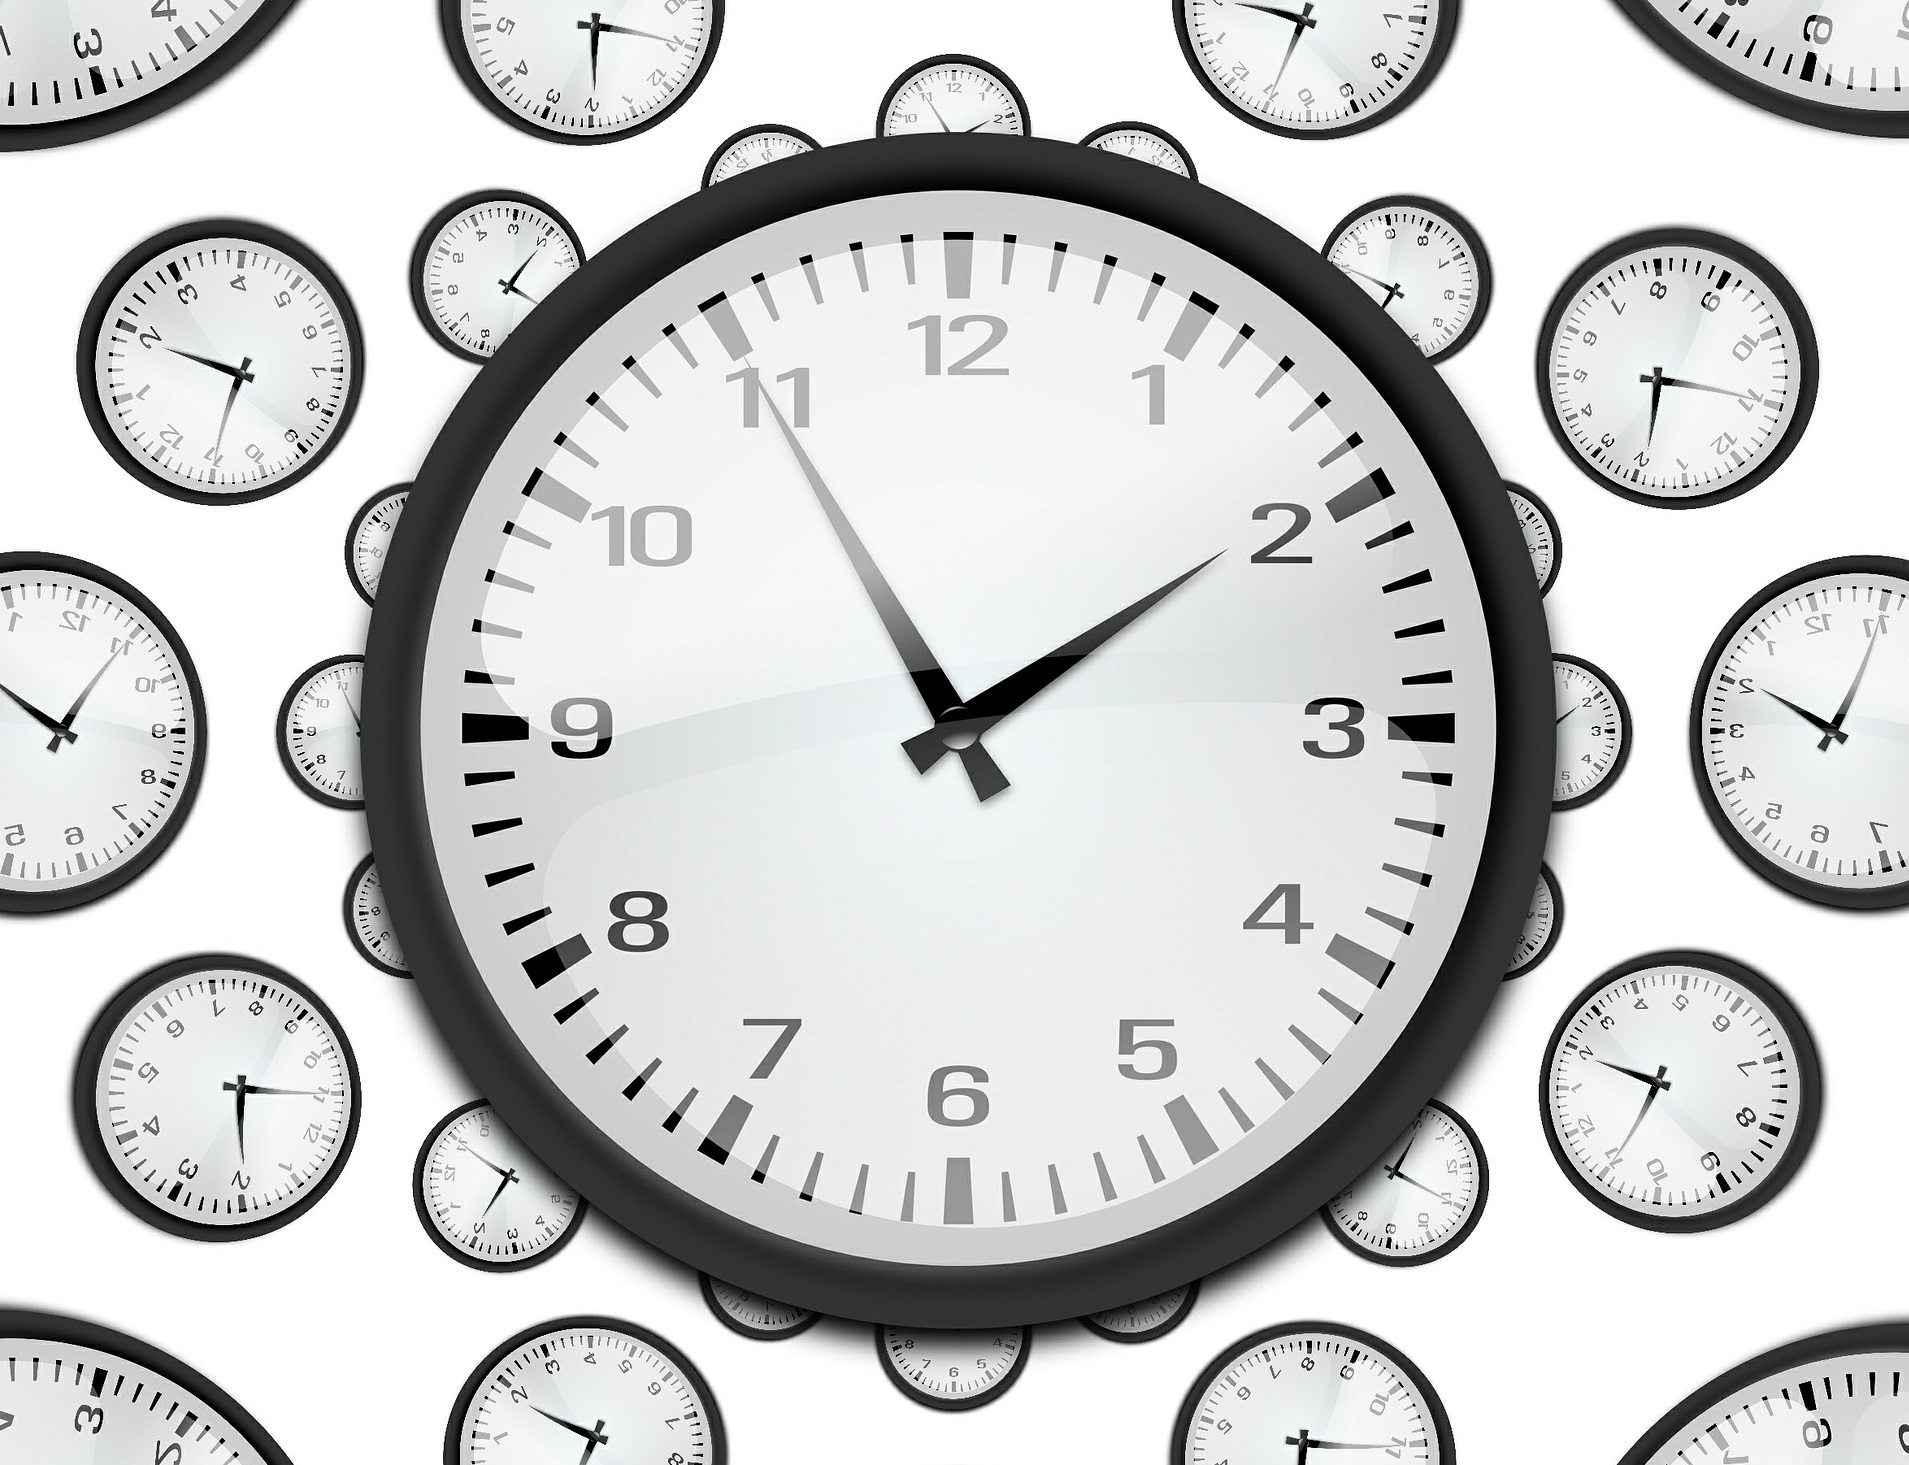 Поедет в 15 часов. Изображение часов. Часы на белом фоне. Часы 8 утра. Часы 8 часов.